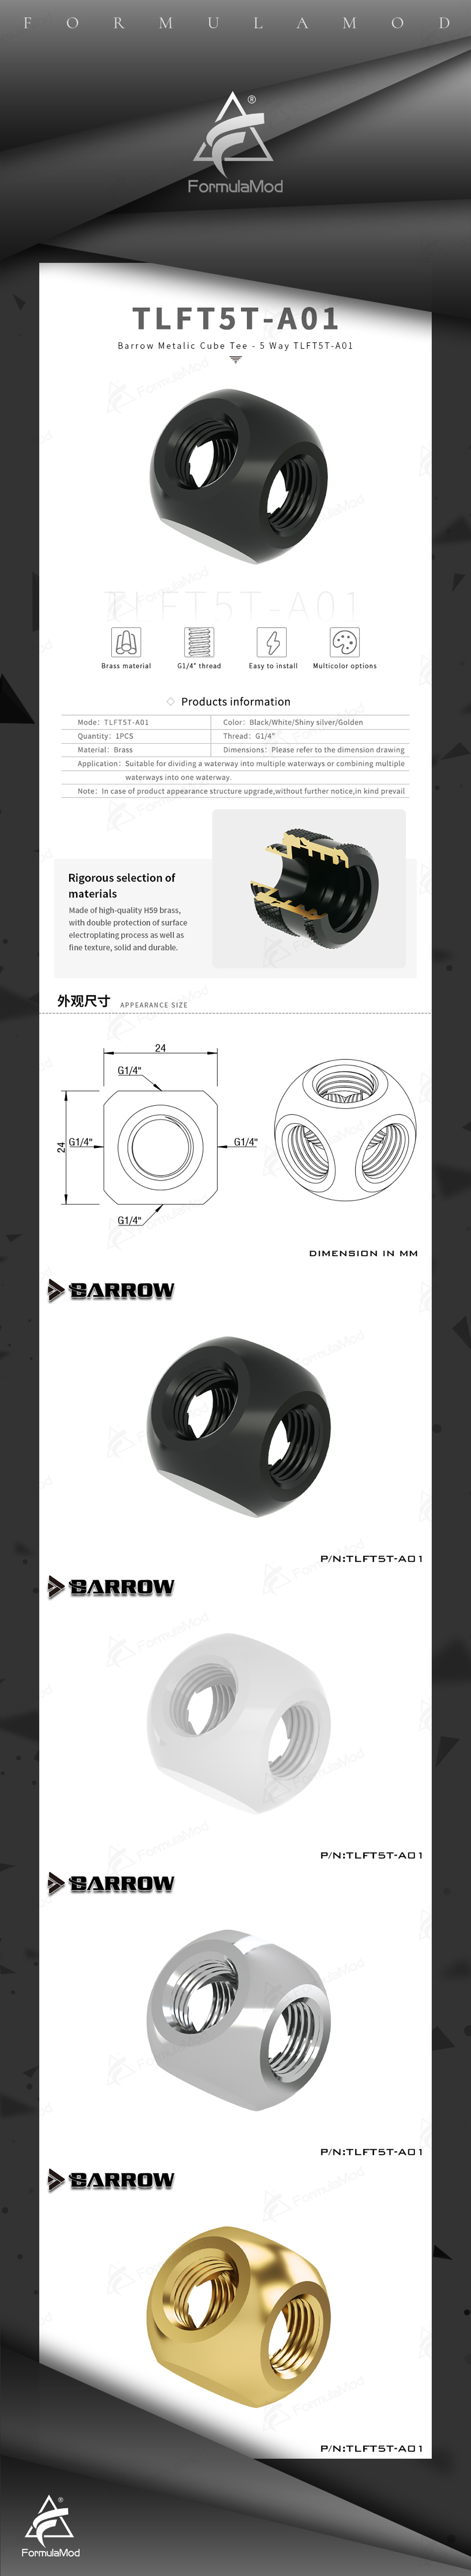 Barrow G1 / 4 "X3 X4 X5 Ways Cubic Adaptors Water Cooling Accessories PC Water Cooling, TLFT3T TLFT4T  TLFT5T  